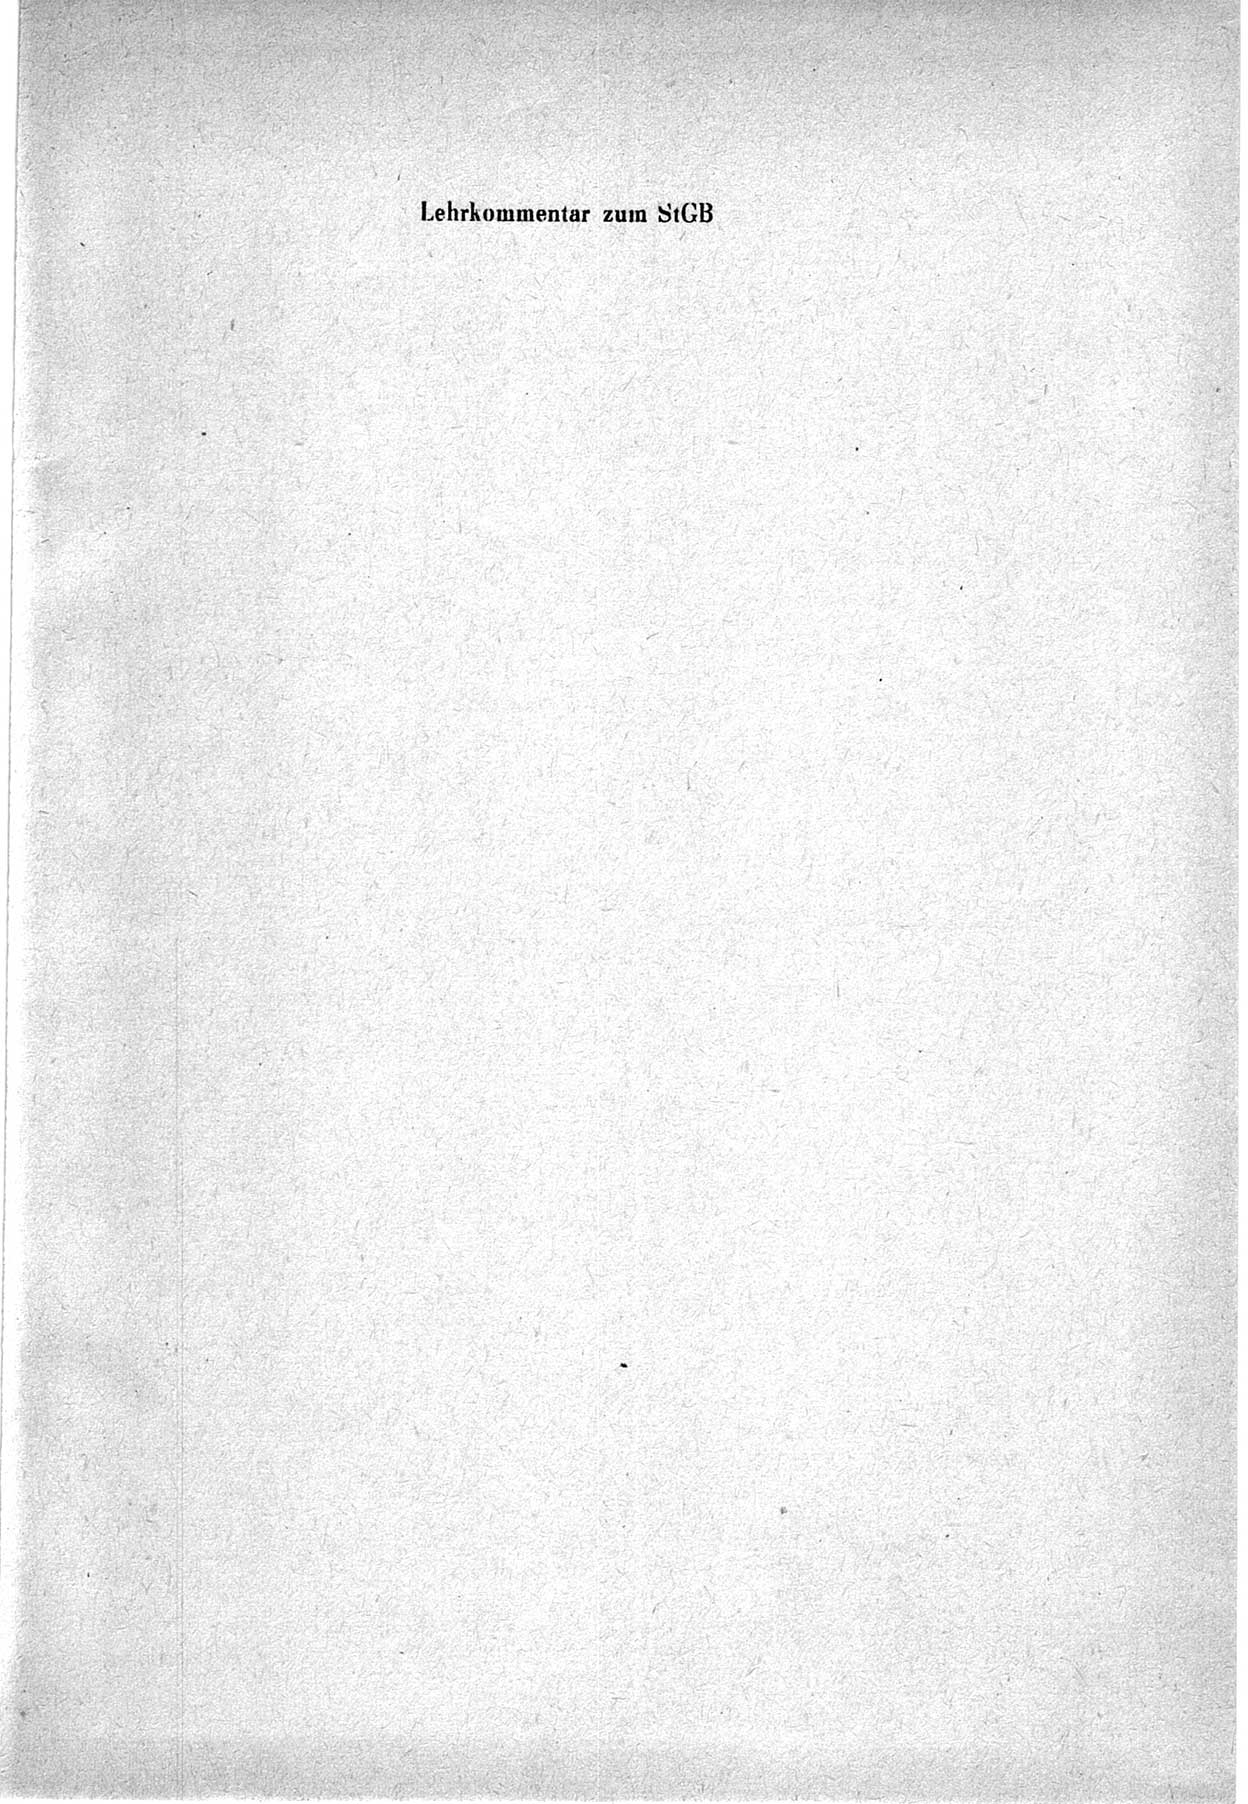 Strafrecht der Deutschen Demokratischen Republik (DDR), Lehrkommentar zum Strafgesetzbuch (StGB), Besonderer Teil 1969, Seite 1 (Strafr. DDR Lehrkomm. StGB BT 1969, S. 1)